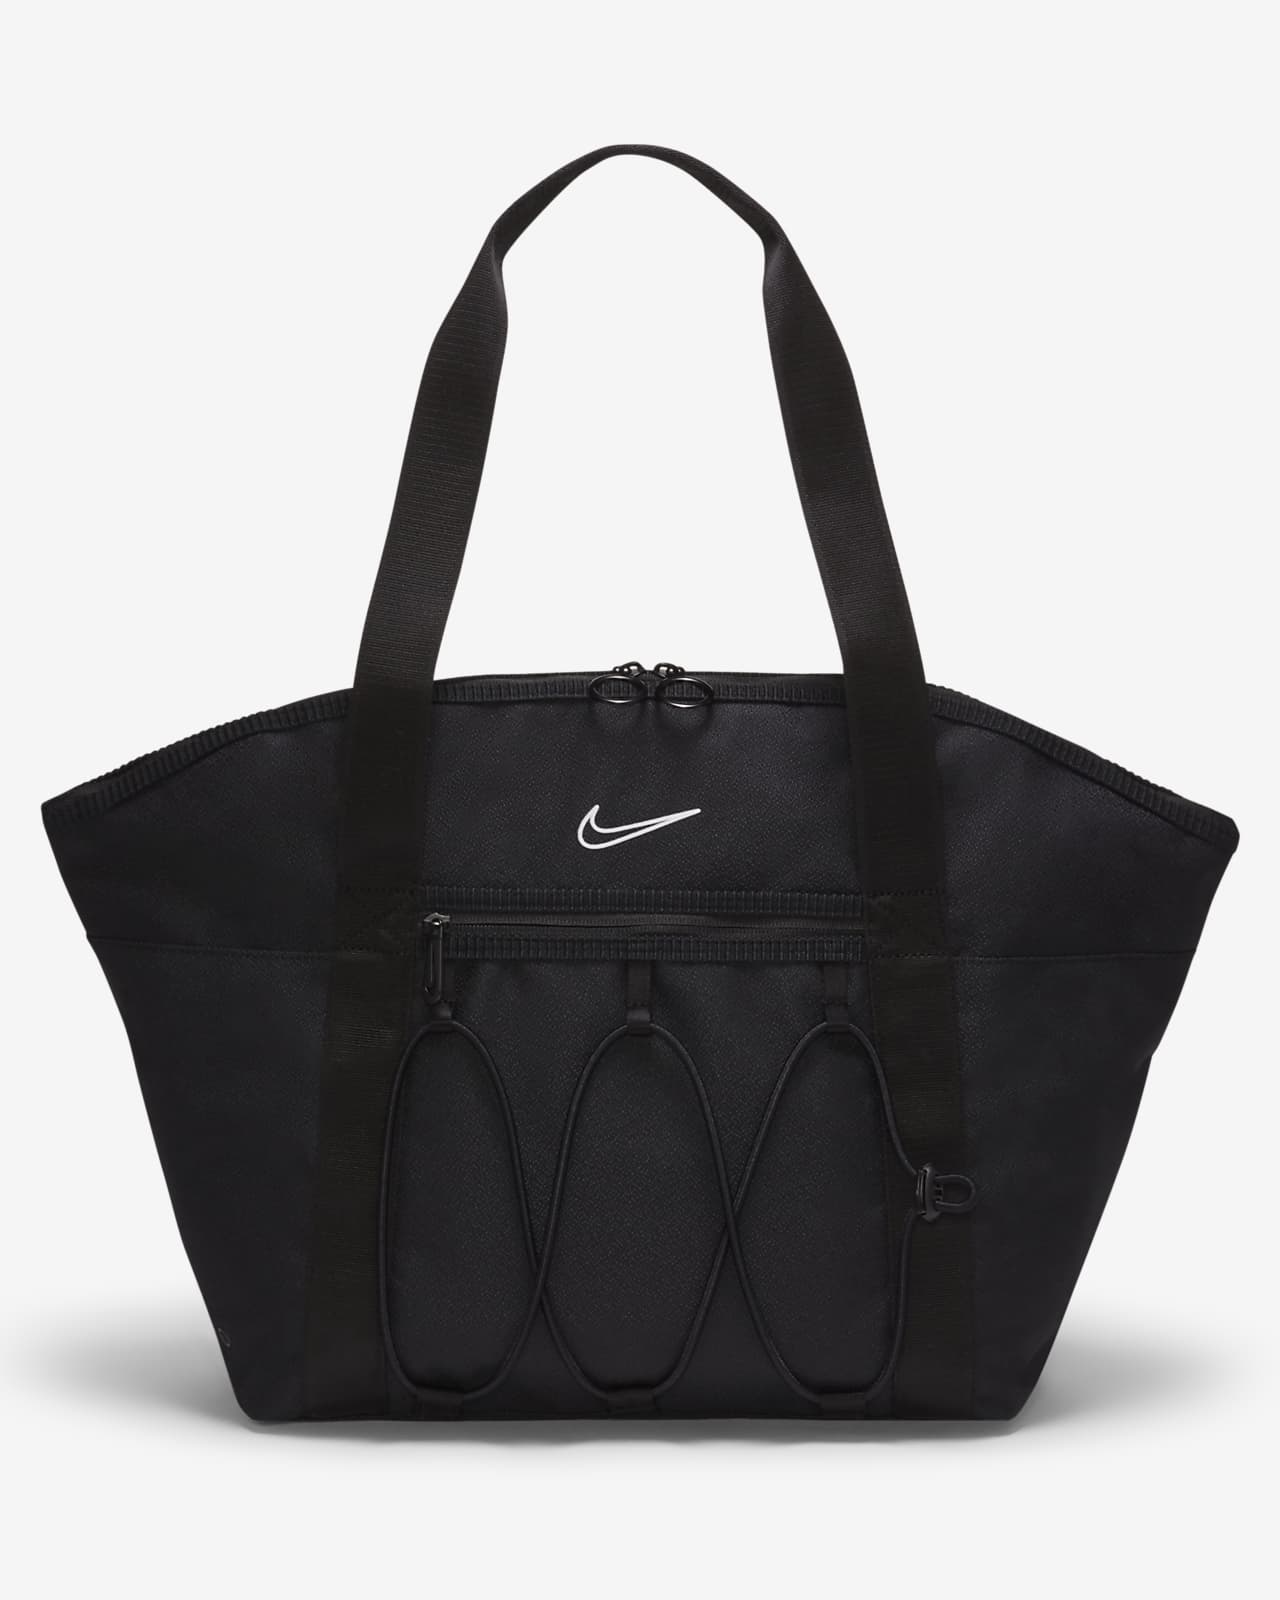 Nike One-træningsmulepose til kvinder (18 liter)